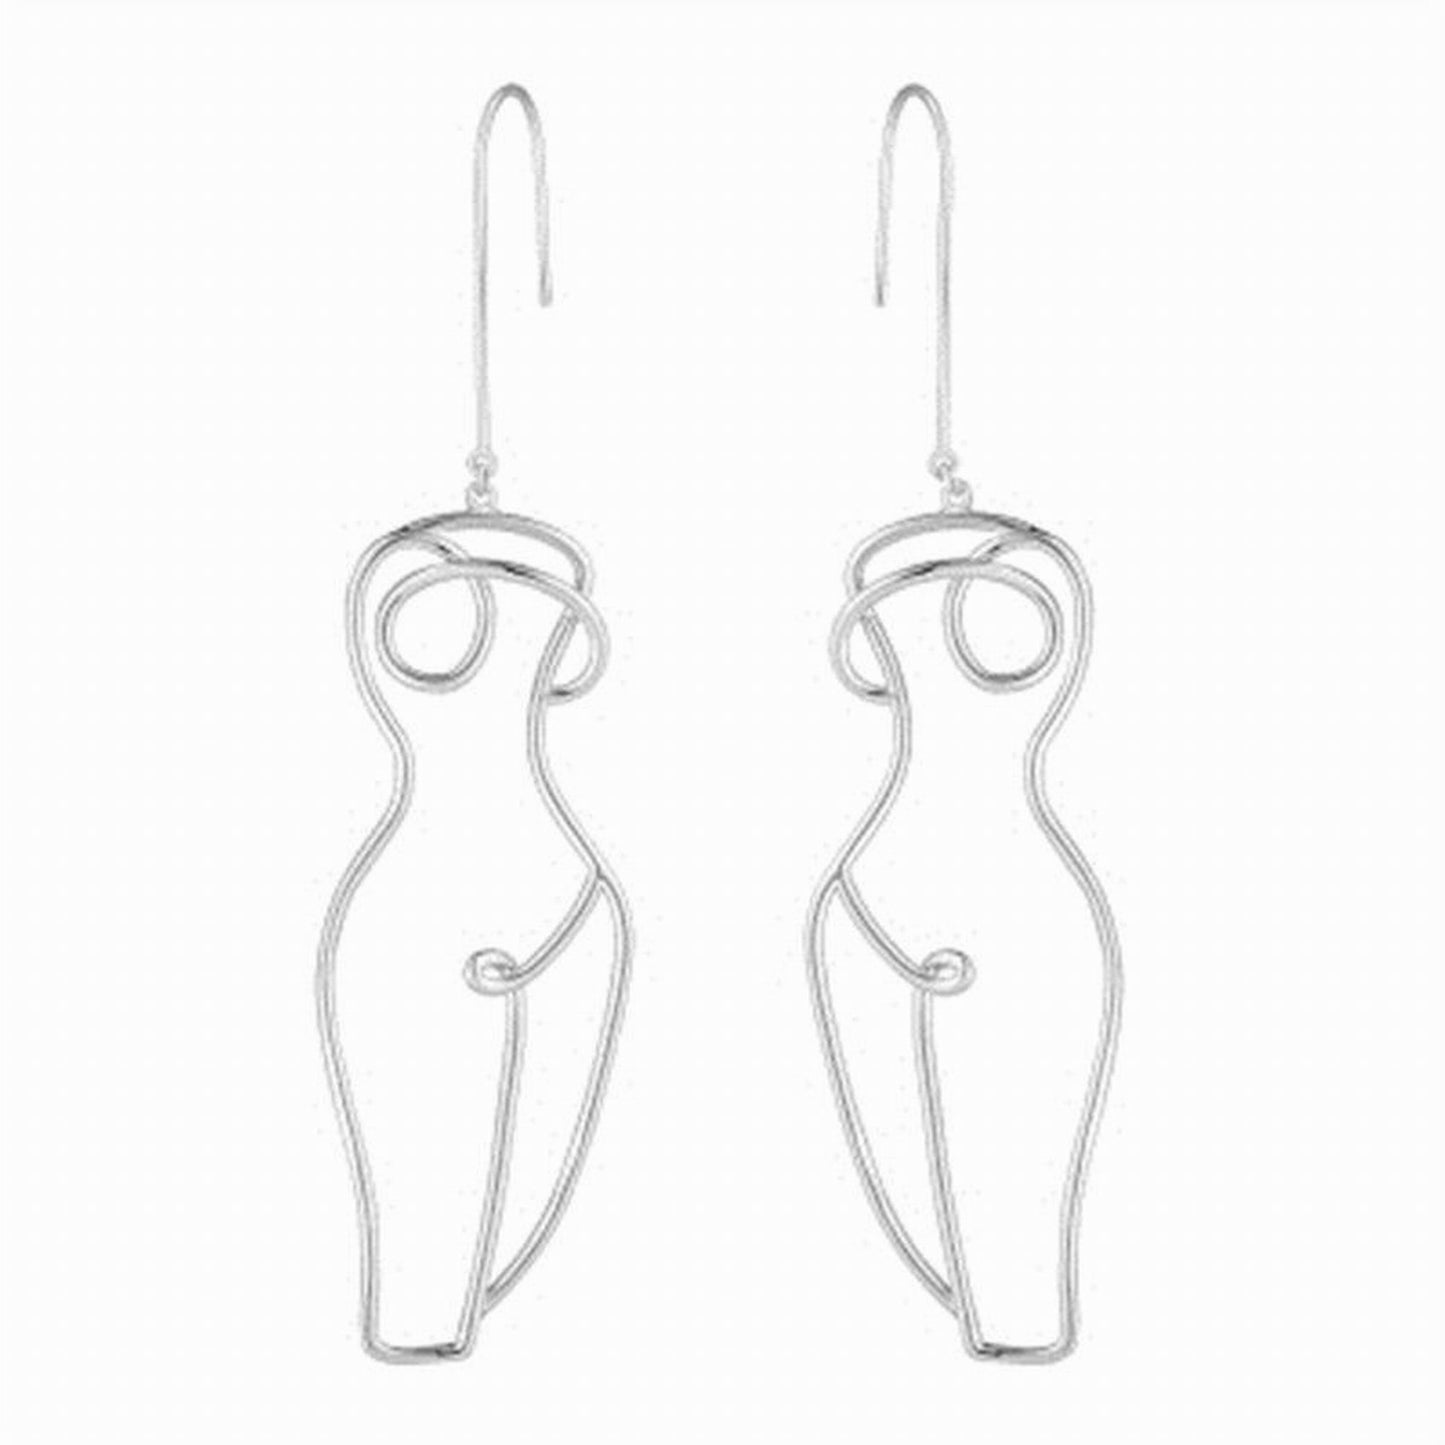 Nude Female Body Earrings